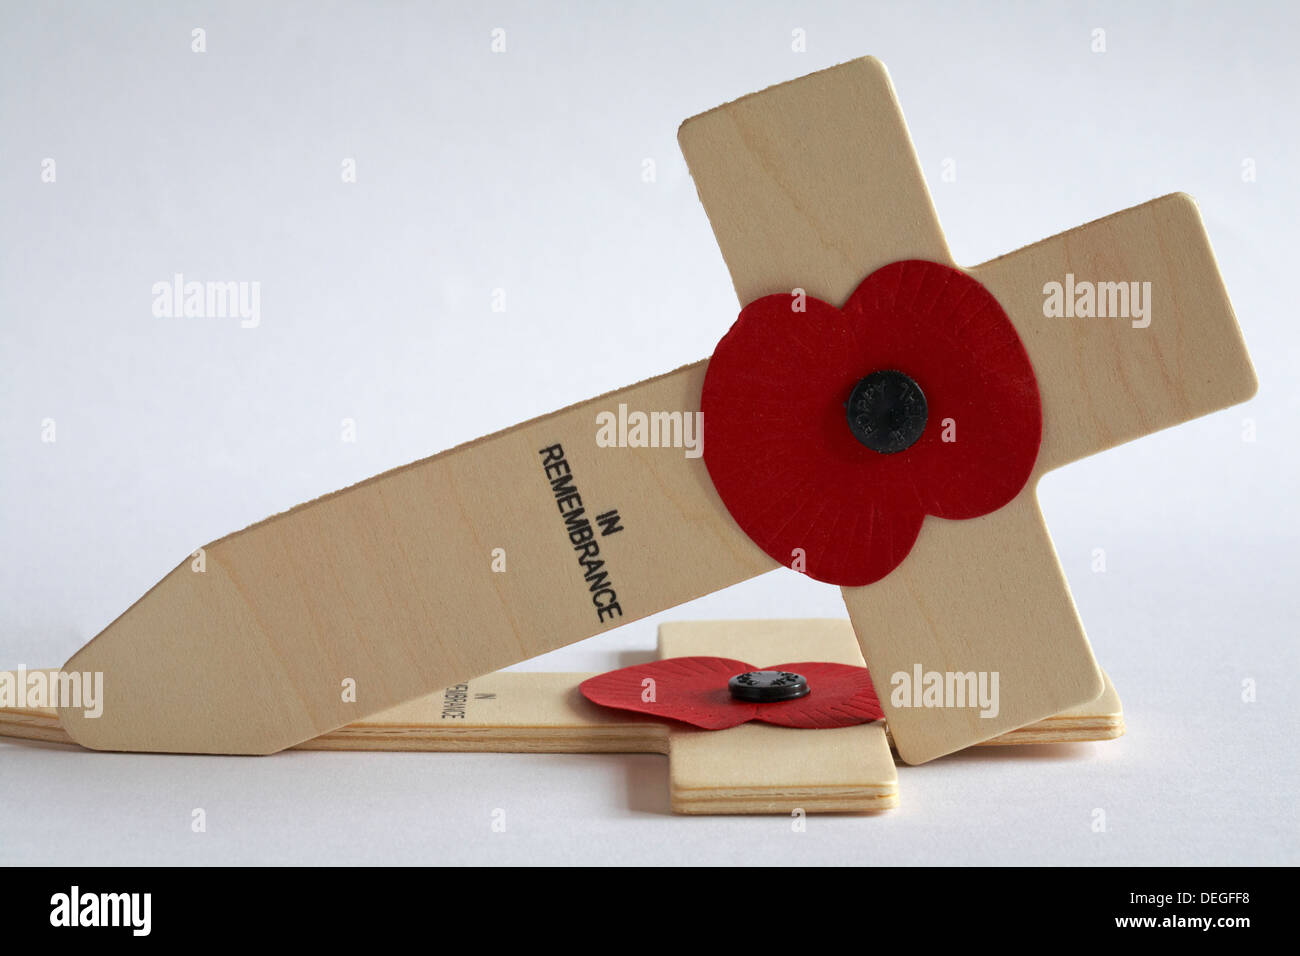 British Legion papaveri rossi in ricordo attraversa impostato su sfondo bianco Foto Stock